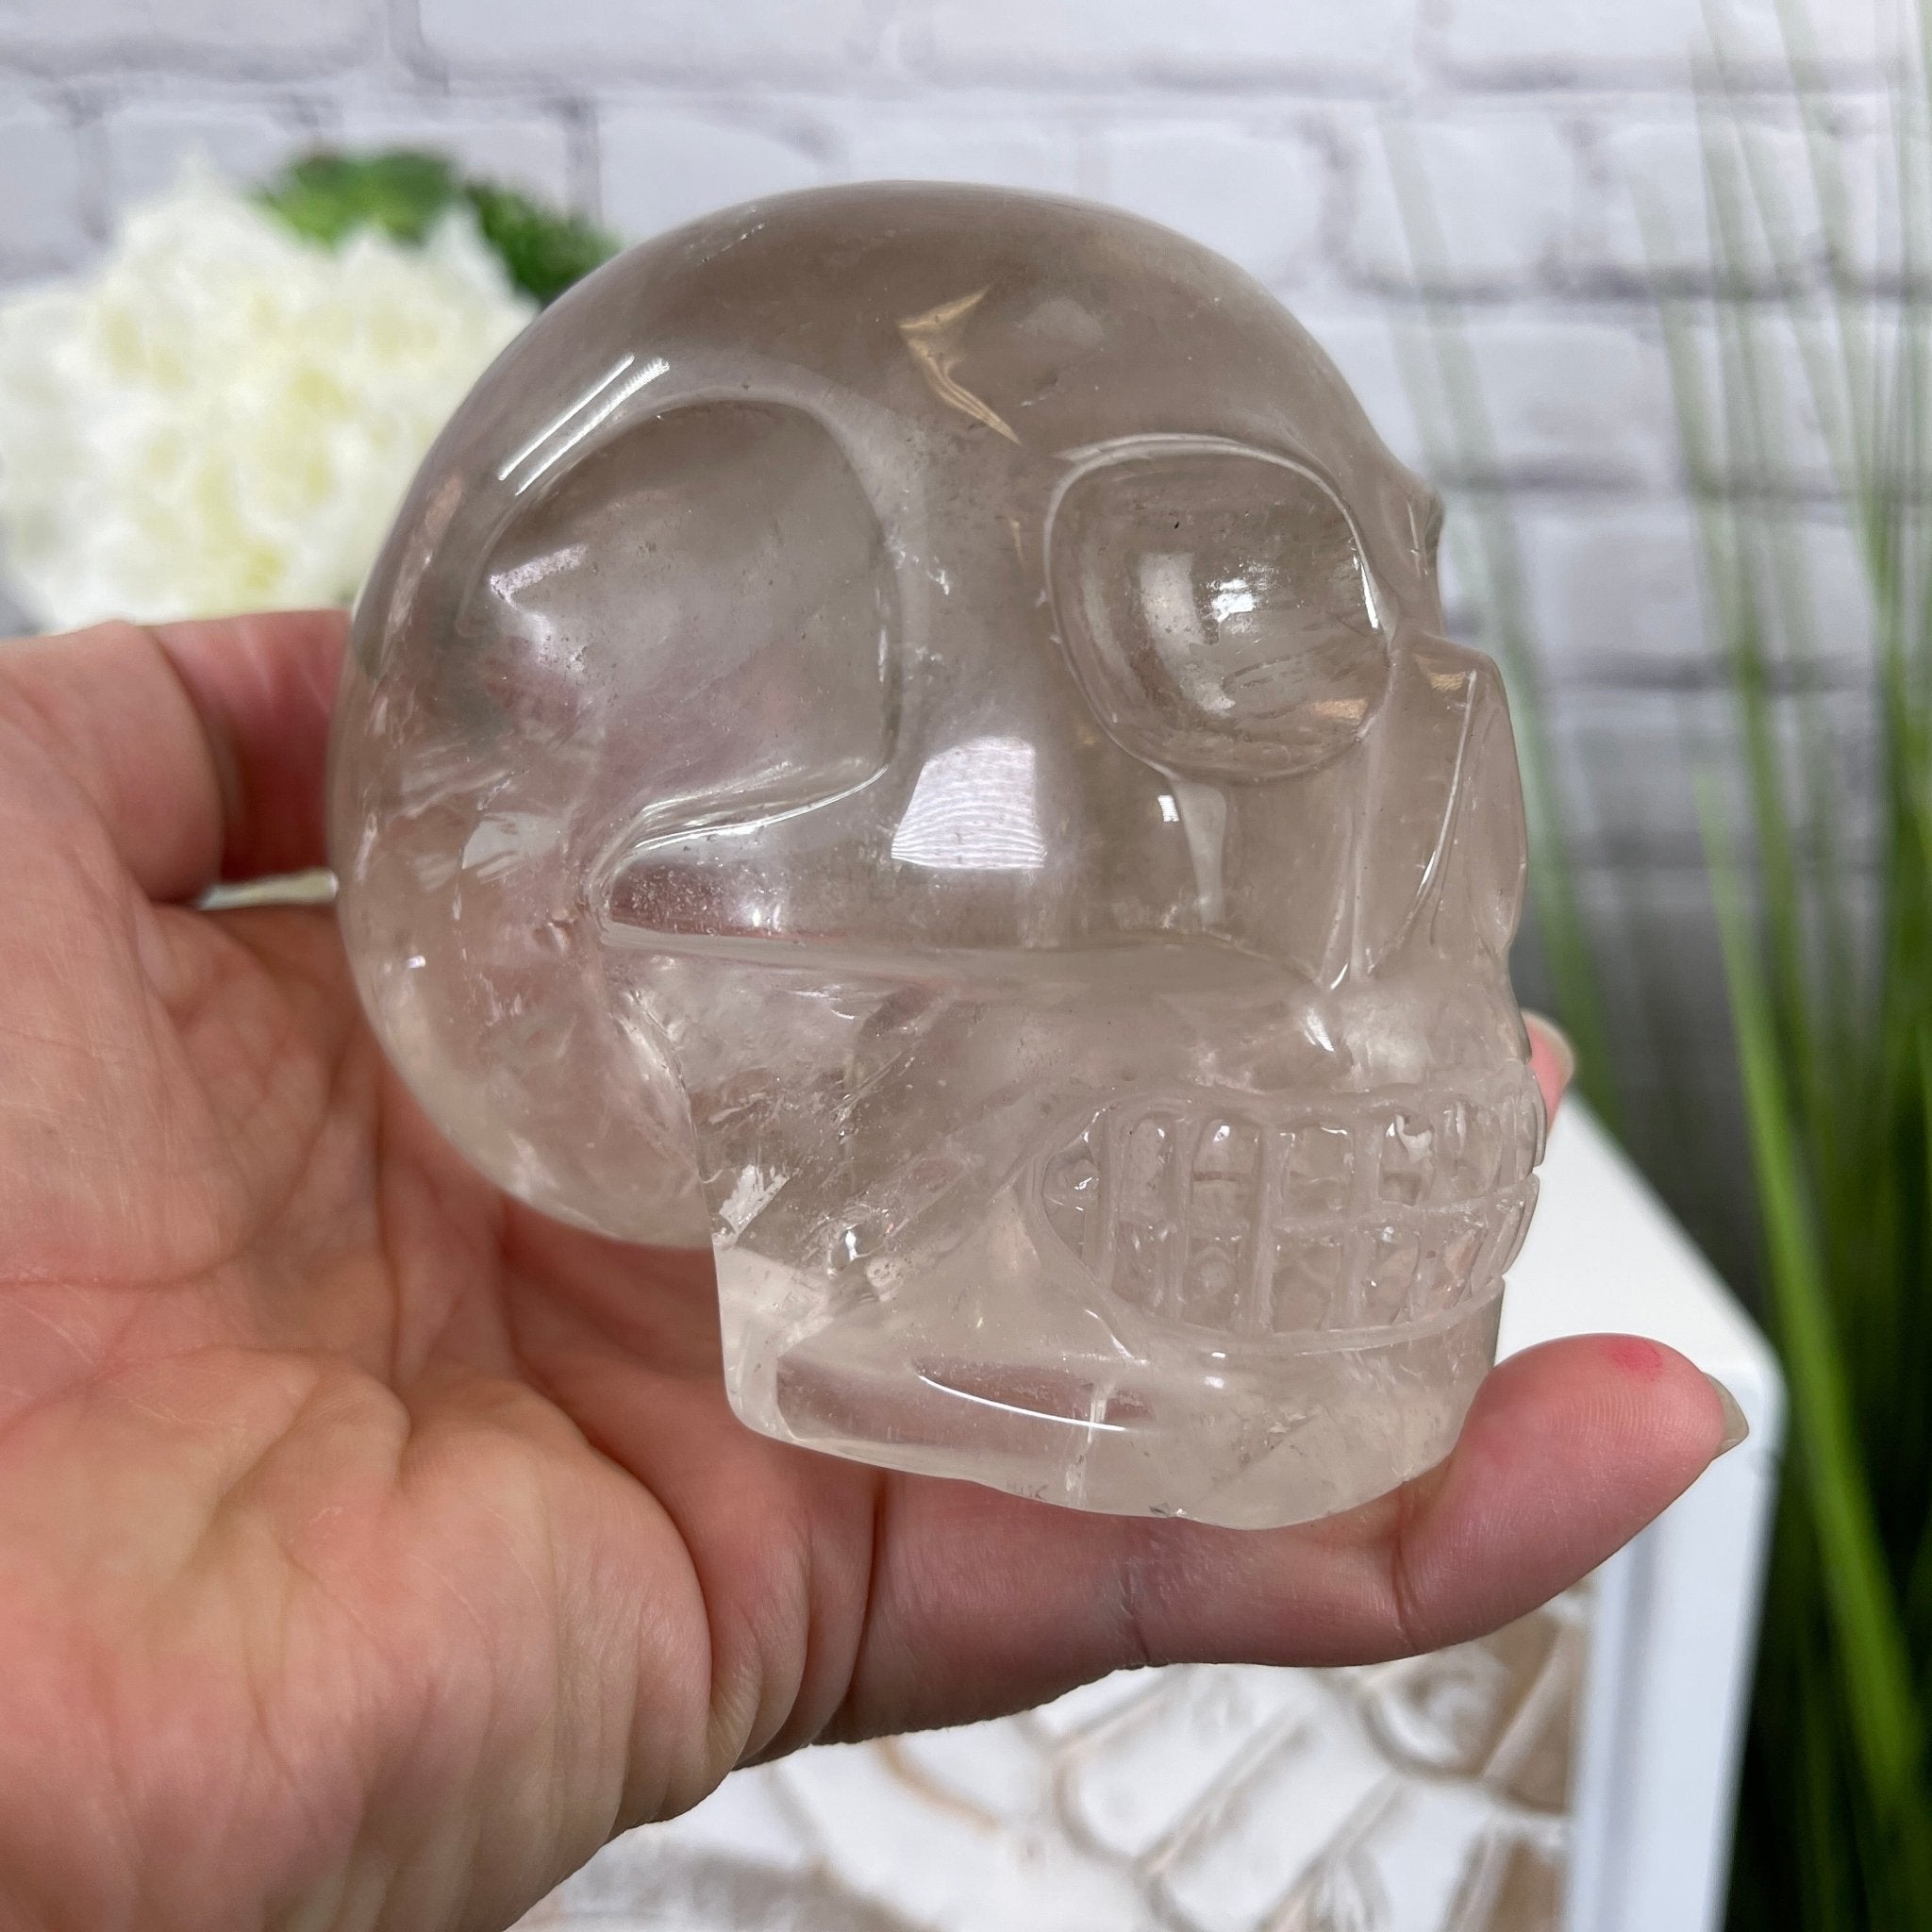 Handmade Clear Quartz Crystal Skull 3.25" tall Model #3477-0005 by Brazil Gems - Brazil GemsBrazil GemsHandmade Clear Quartz Crystal Skull 3.25" tall Model #3477-0005 by Brazil GemsSkulls3477-0005